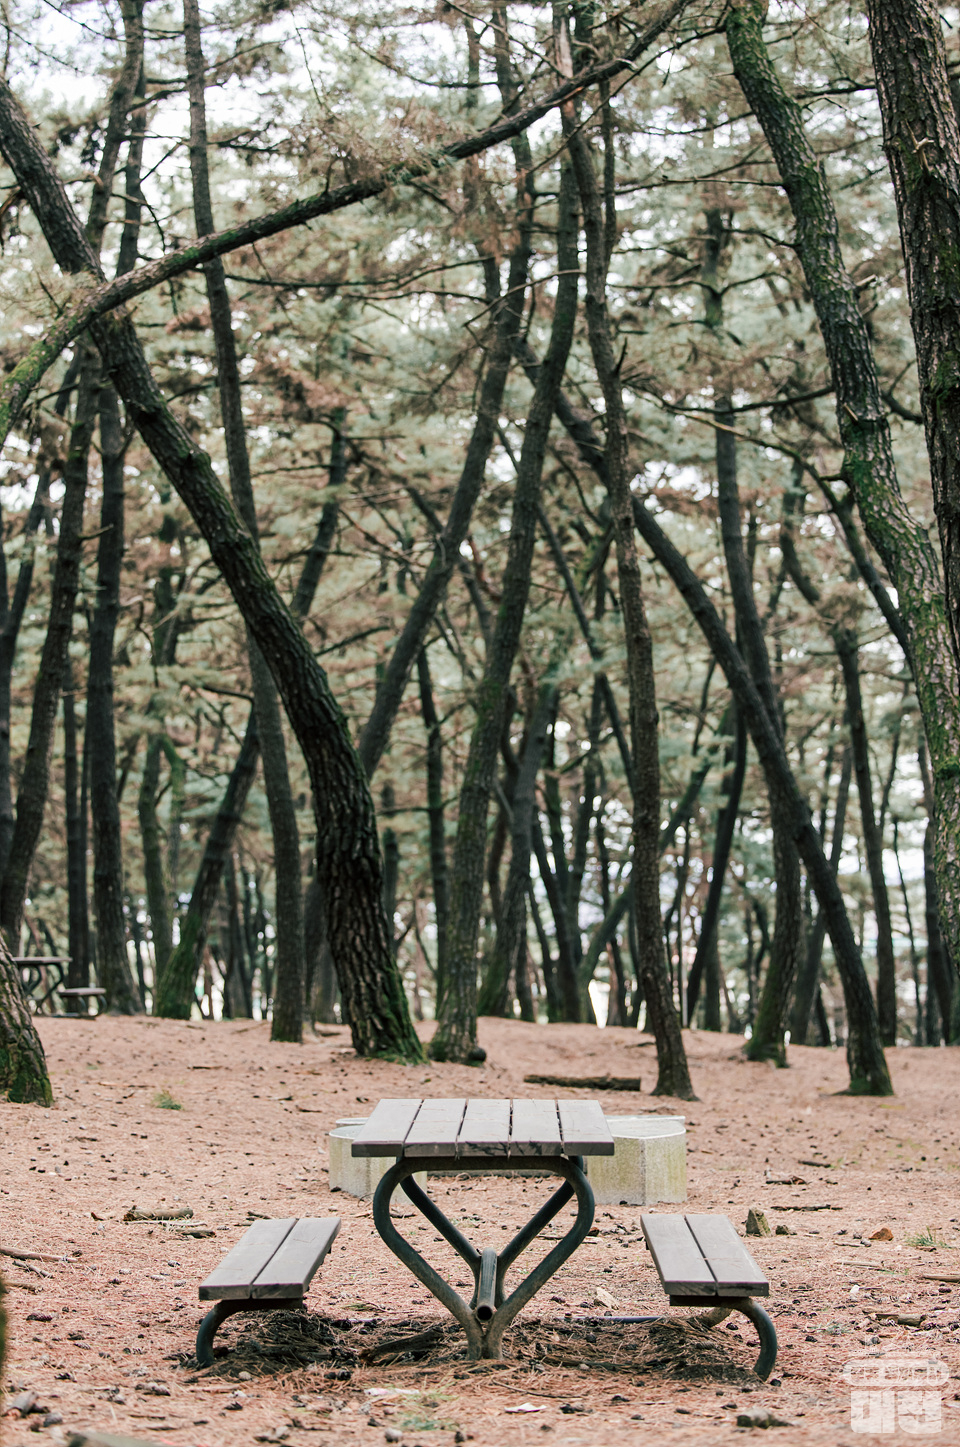 대전에 숨겨진 넓고 웅장한 소나무 숲, 솔밭공원